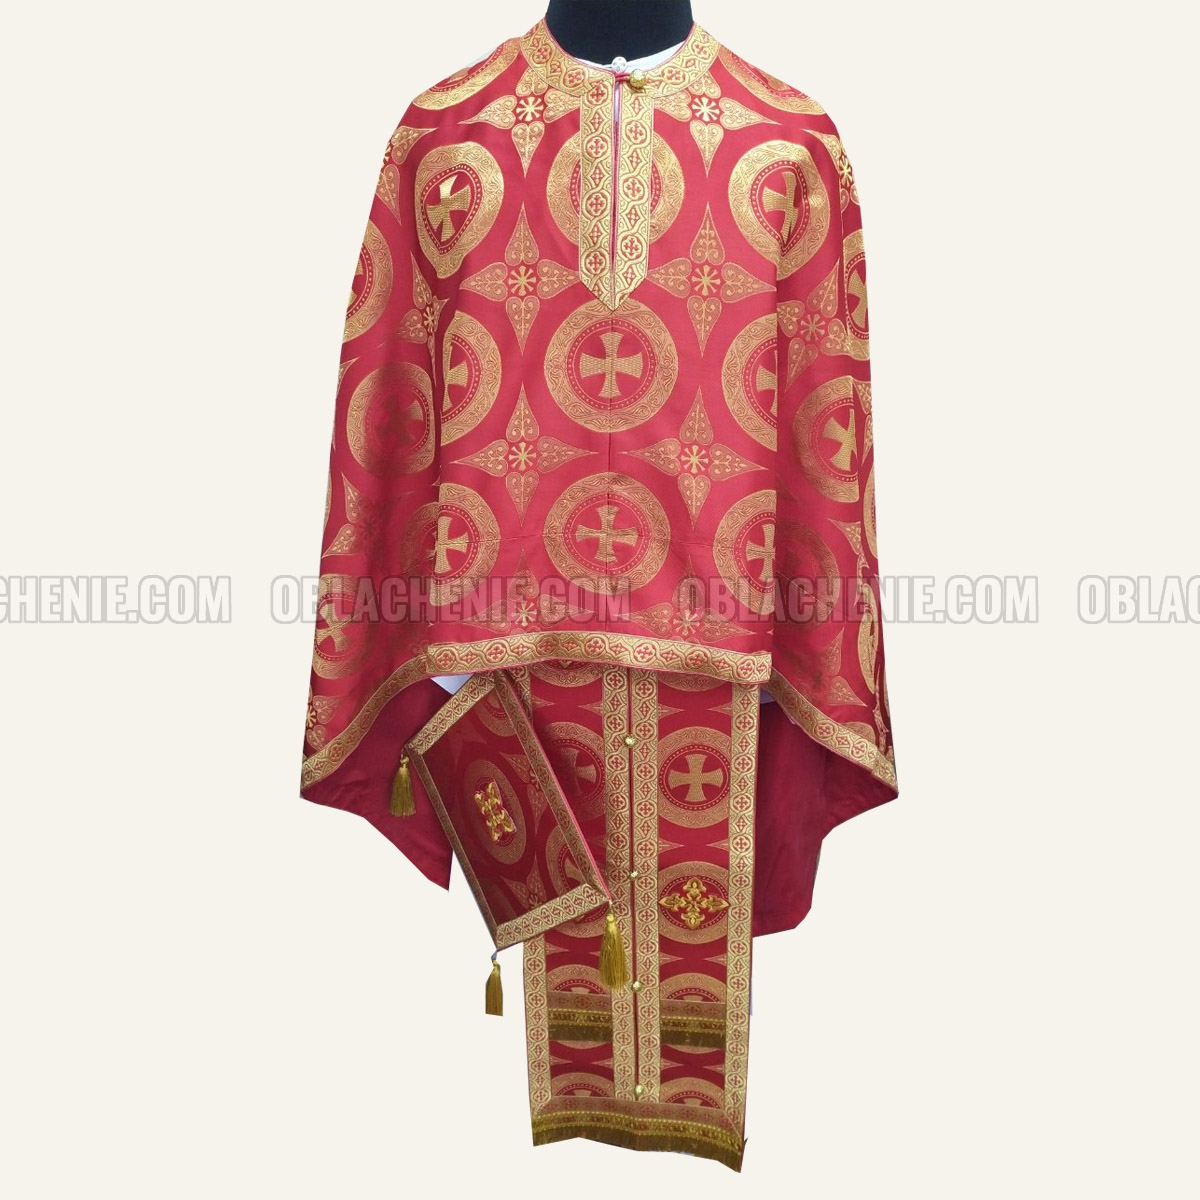 Priest's vestments 10656